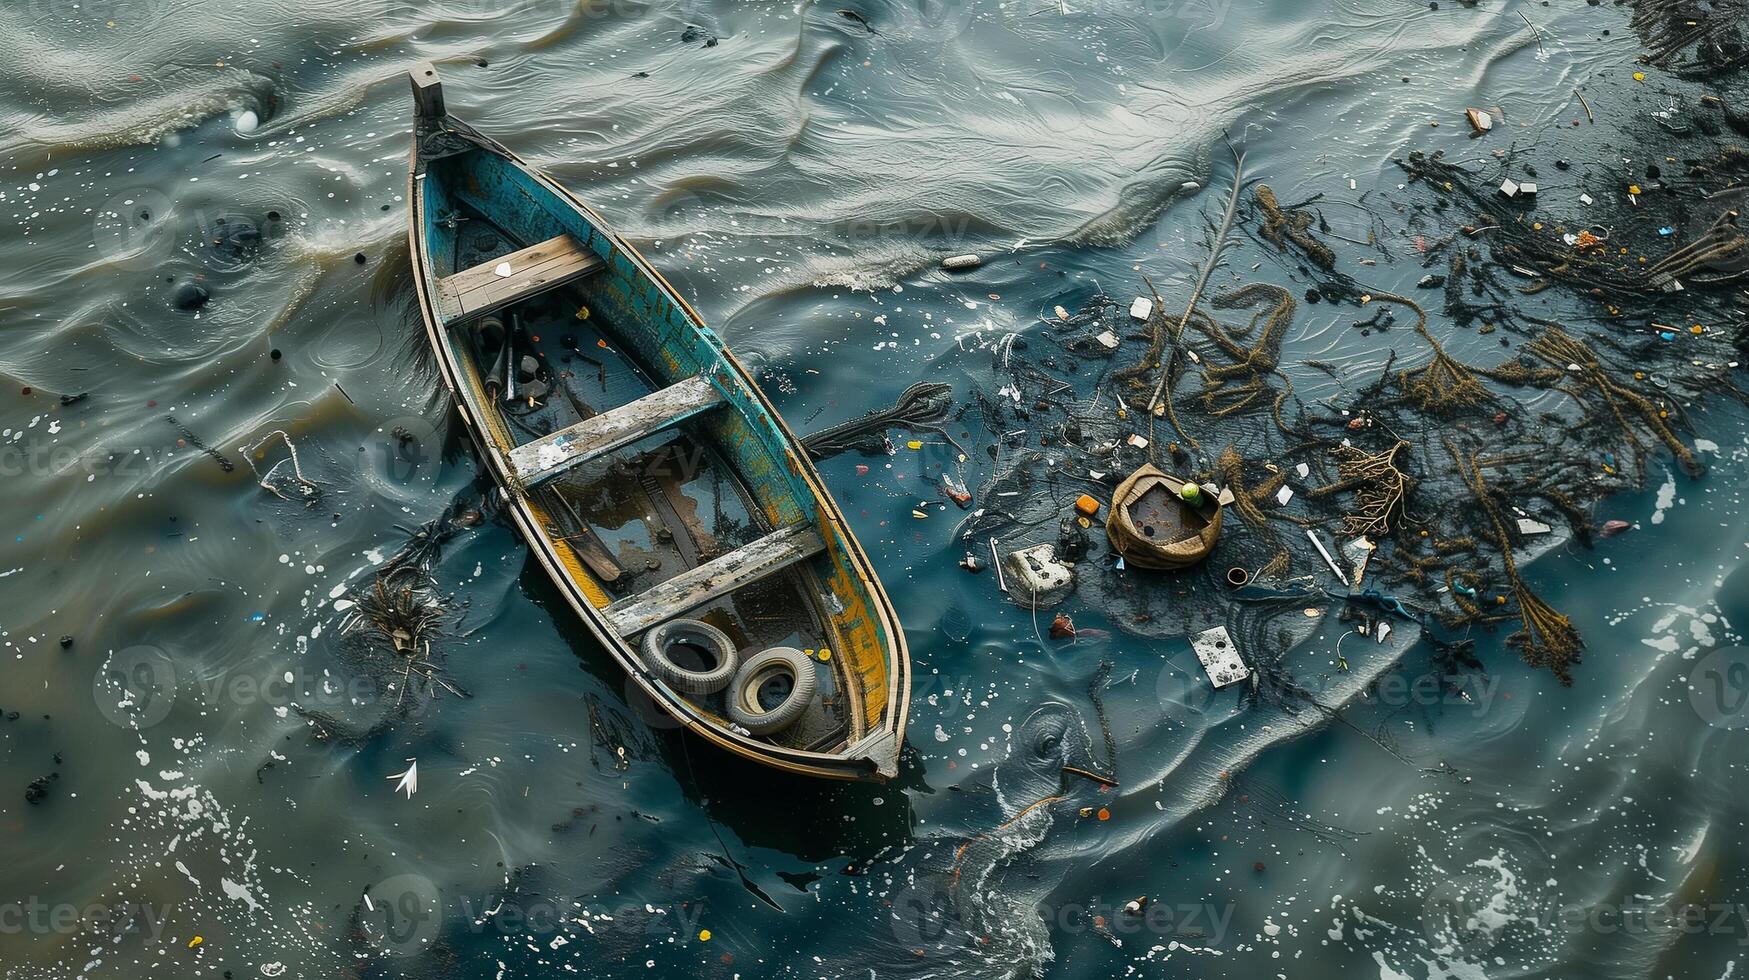 un solitario de madera barco flotadores en contaminado aguas, rodeado por escombros y desperdiciar, destacando ambiental preocupaciones. foto